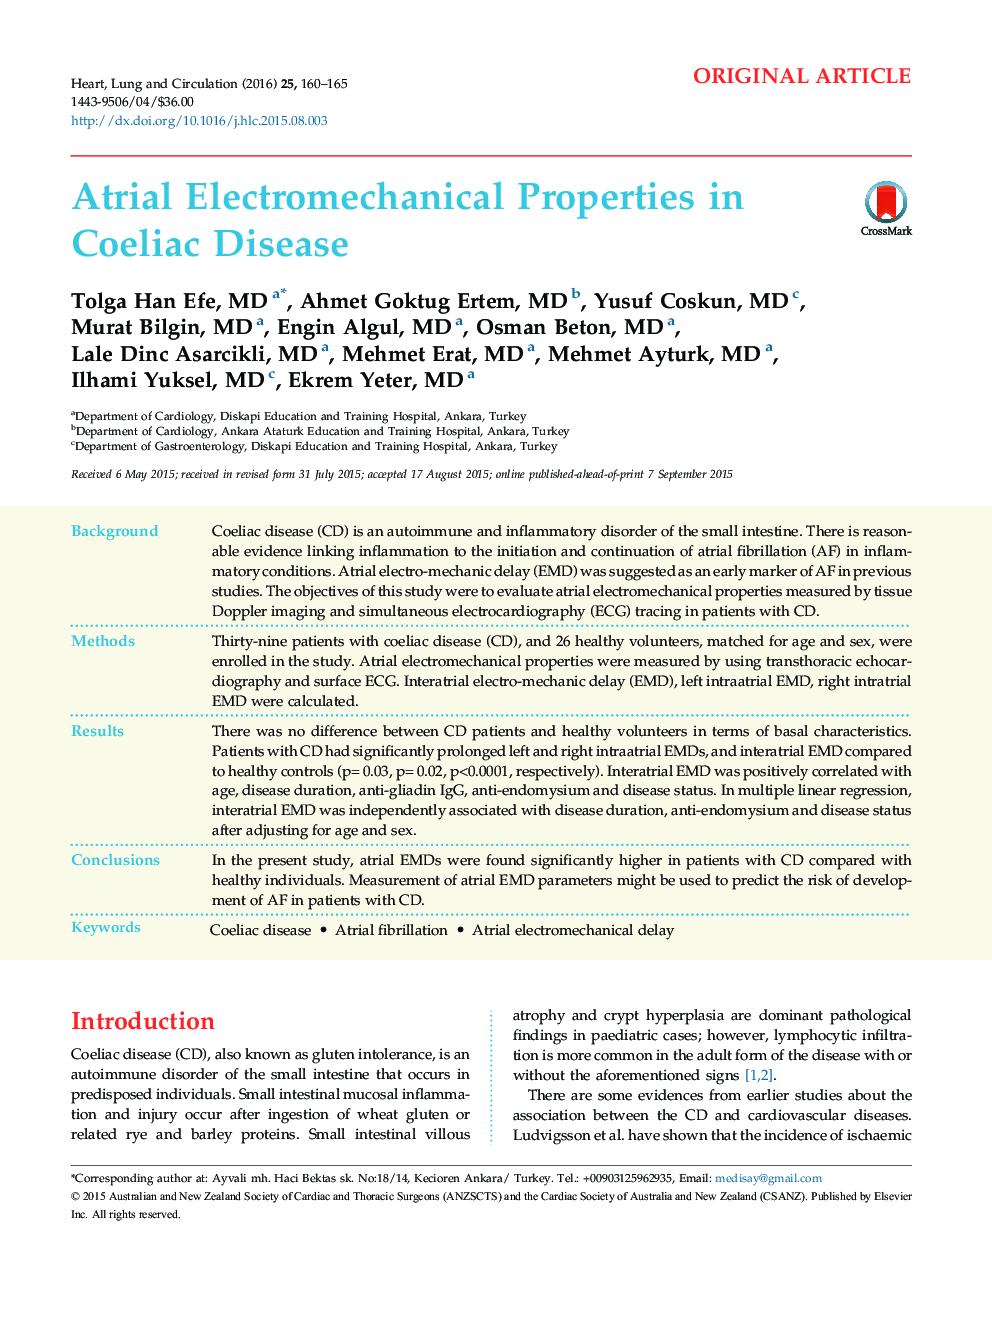 Atrial Electromechanical Properties in Coeliac Disease